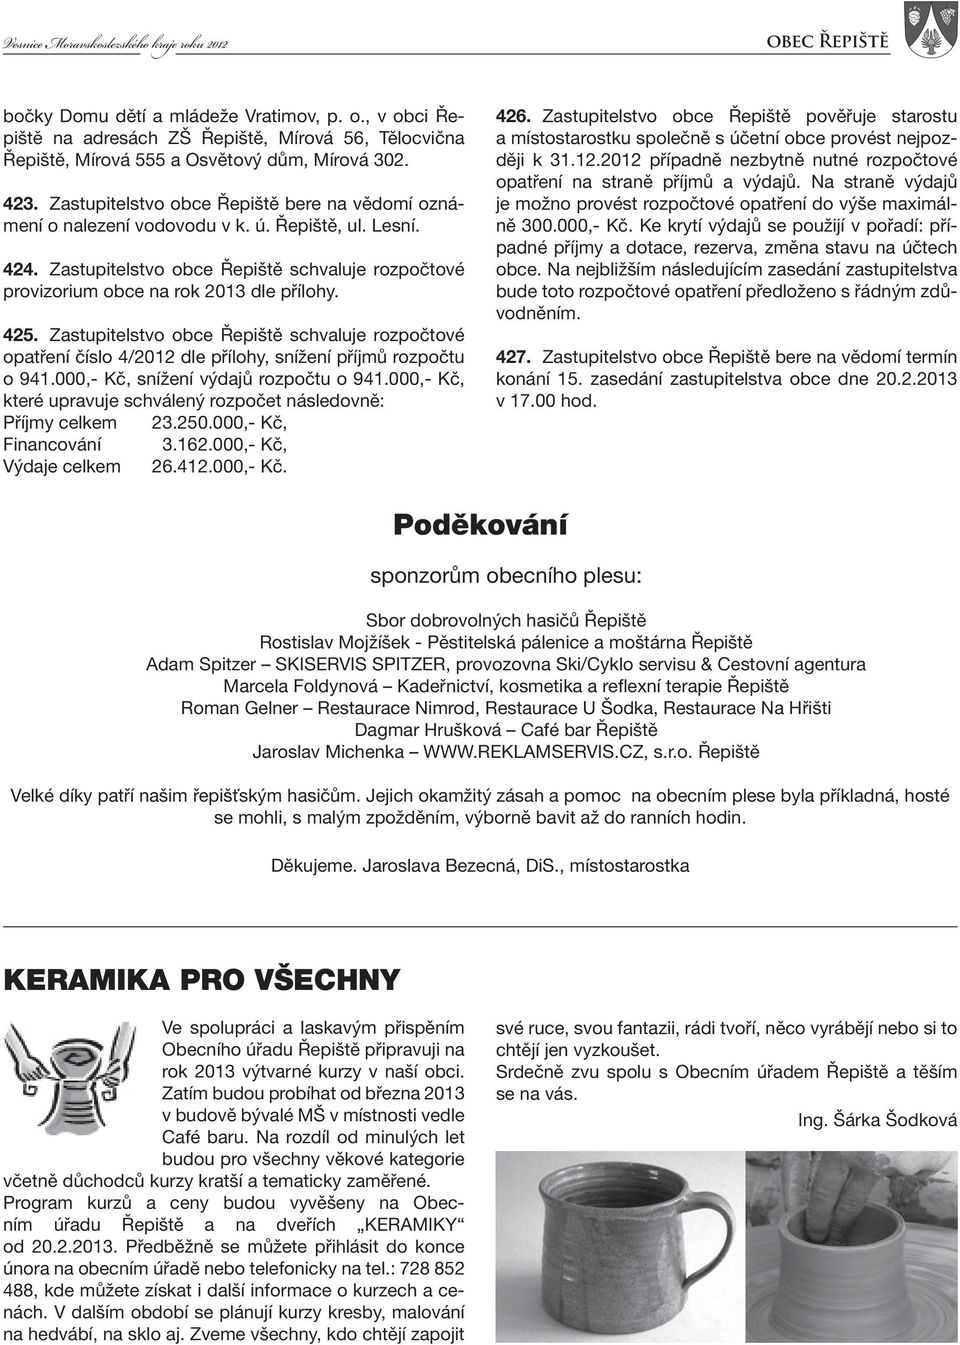 425. Zastupitelstvo obce Řepiště schvaluje rozpočtové opatření číslo 4/2012 dle přílohy, snížení příjmů rozpočtu o 941.000,- Kč, snížení výdajů rozpočtu o 941.